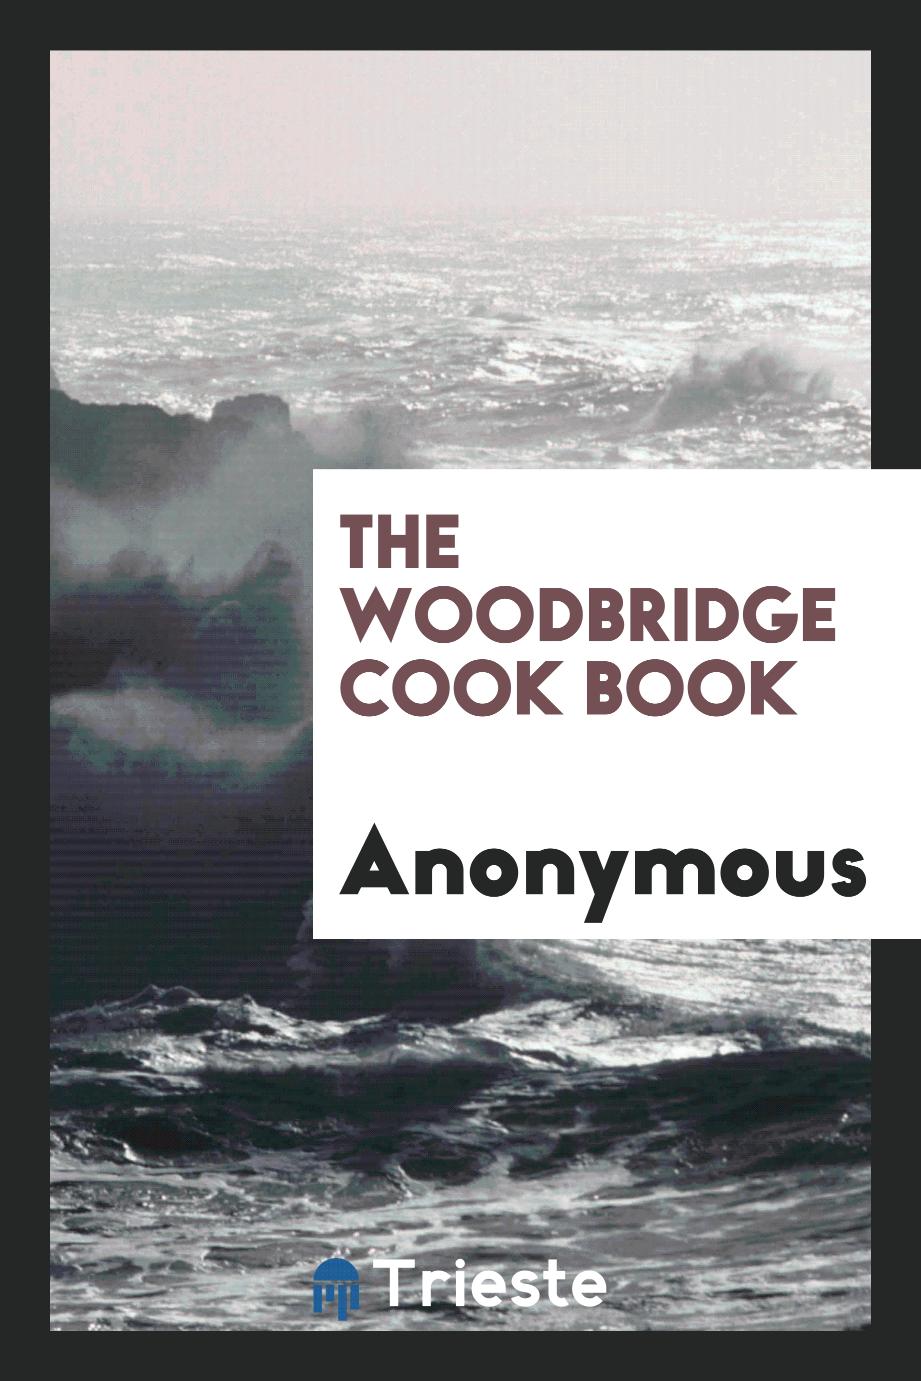 The Woodbridge cook book